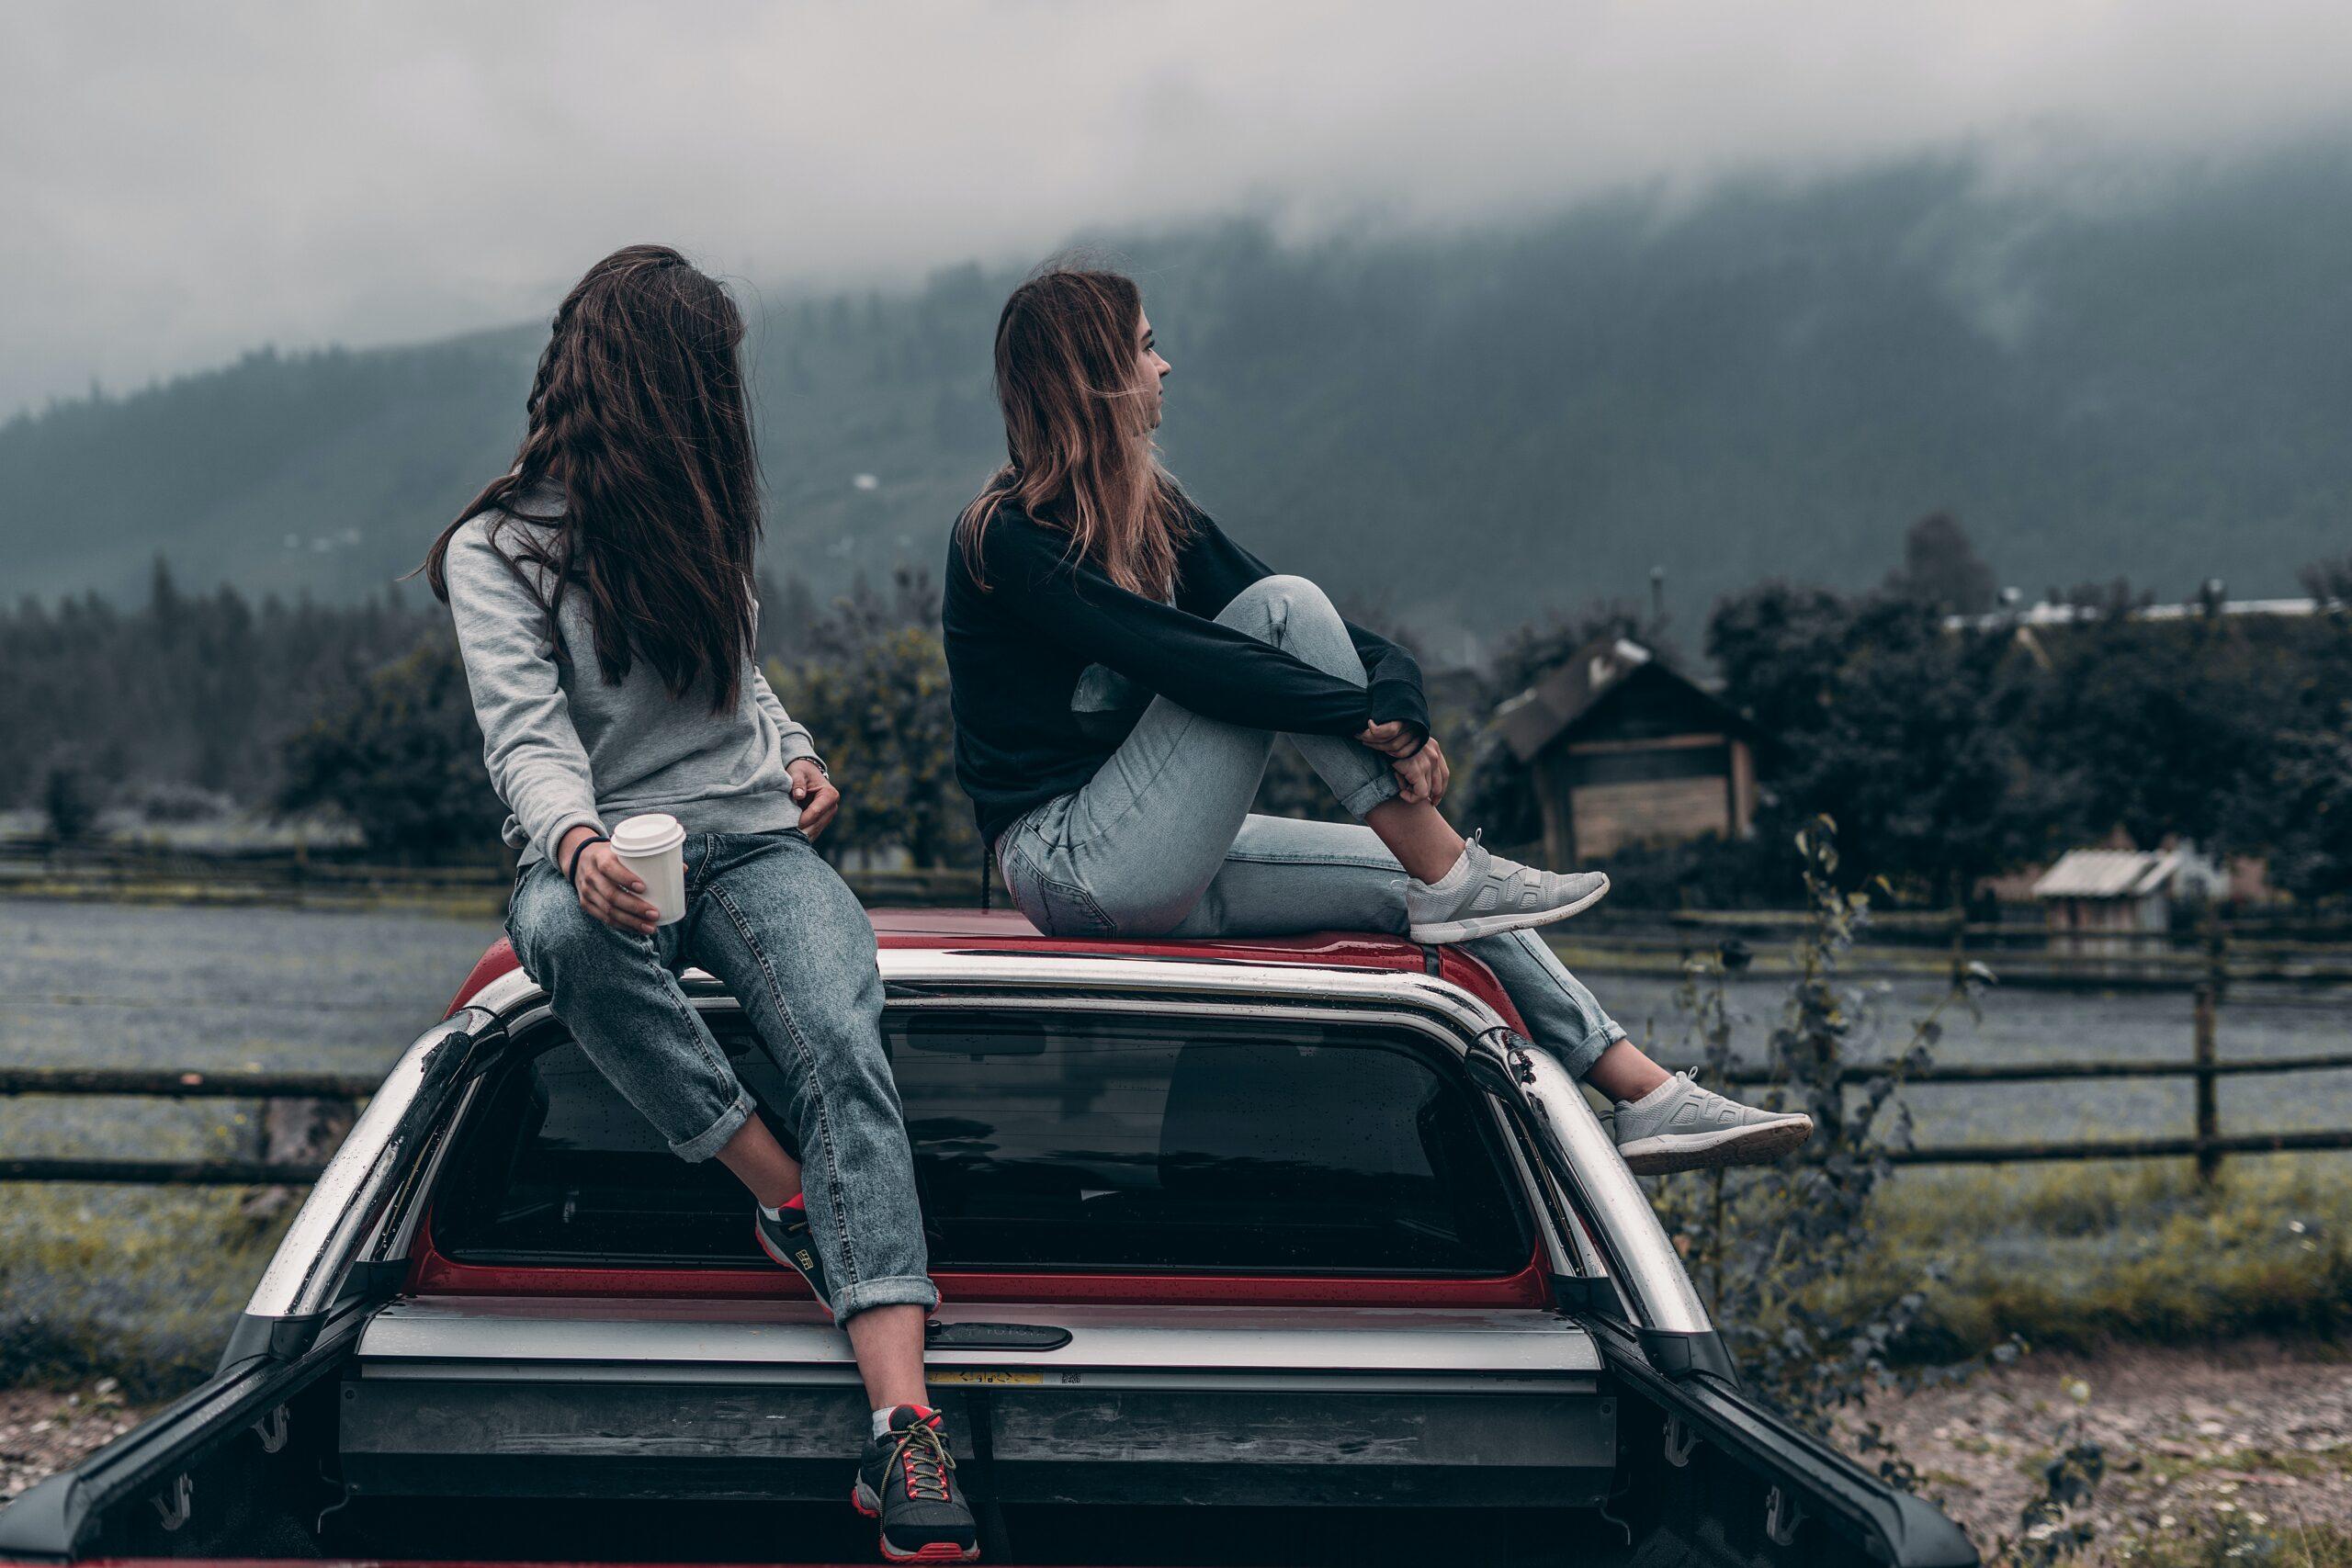 Como fazer intercâmbio voluntário pela Worldpackers | Imagem mostra duas mulheres jovens em cima de um carro. Uma delas segura um copo de café. As moças estão sobre um carro de cor avermelhada e estão em um lugar ao ar livre.